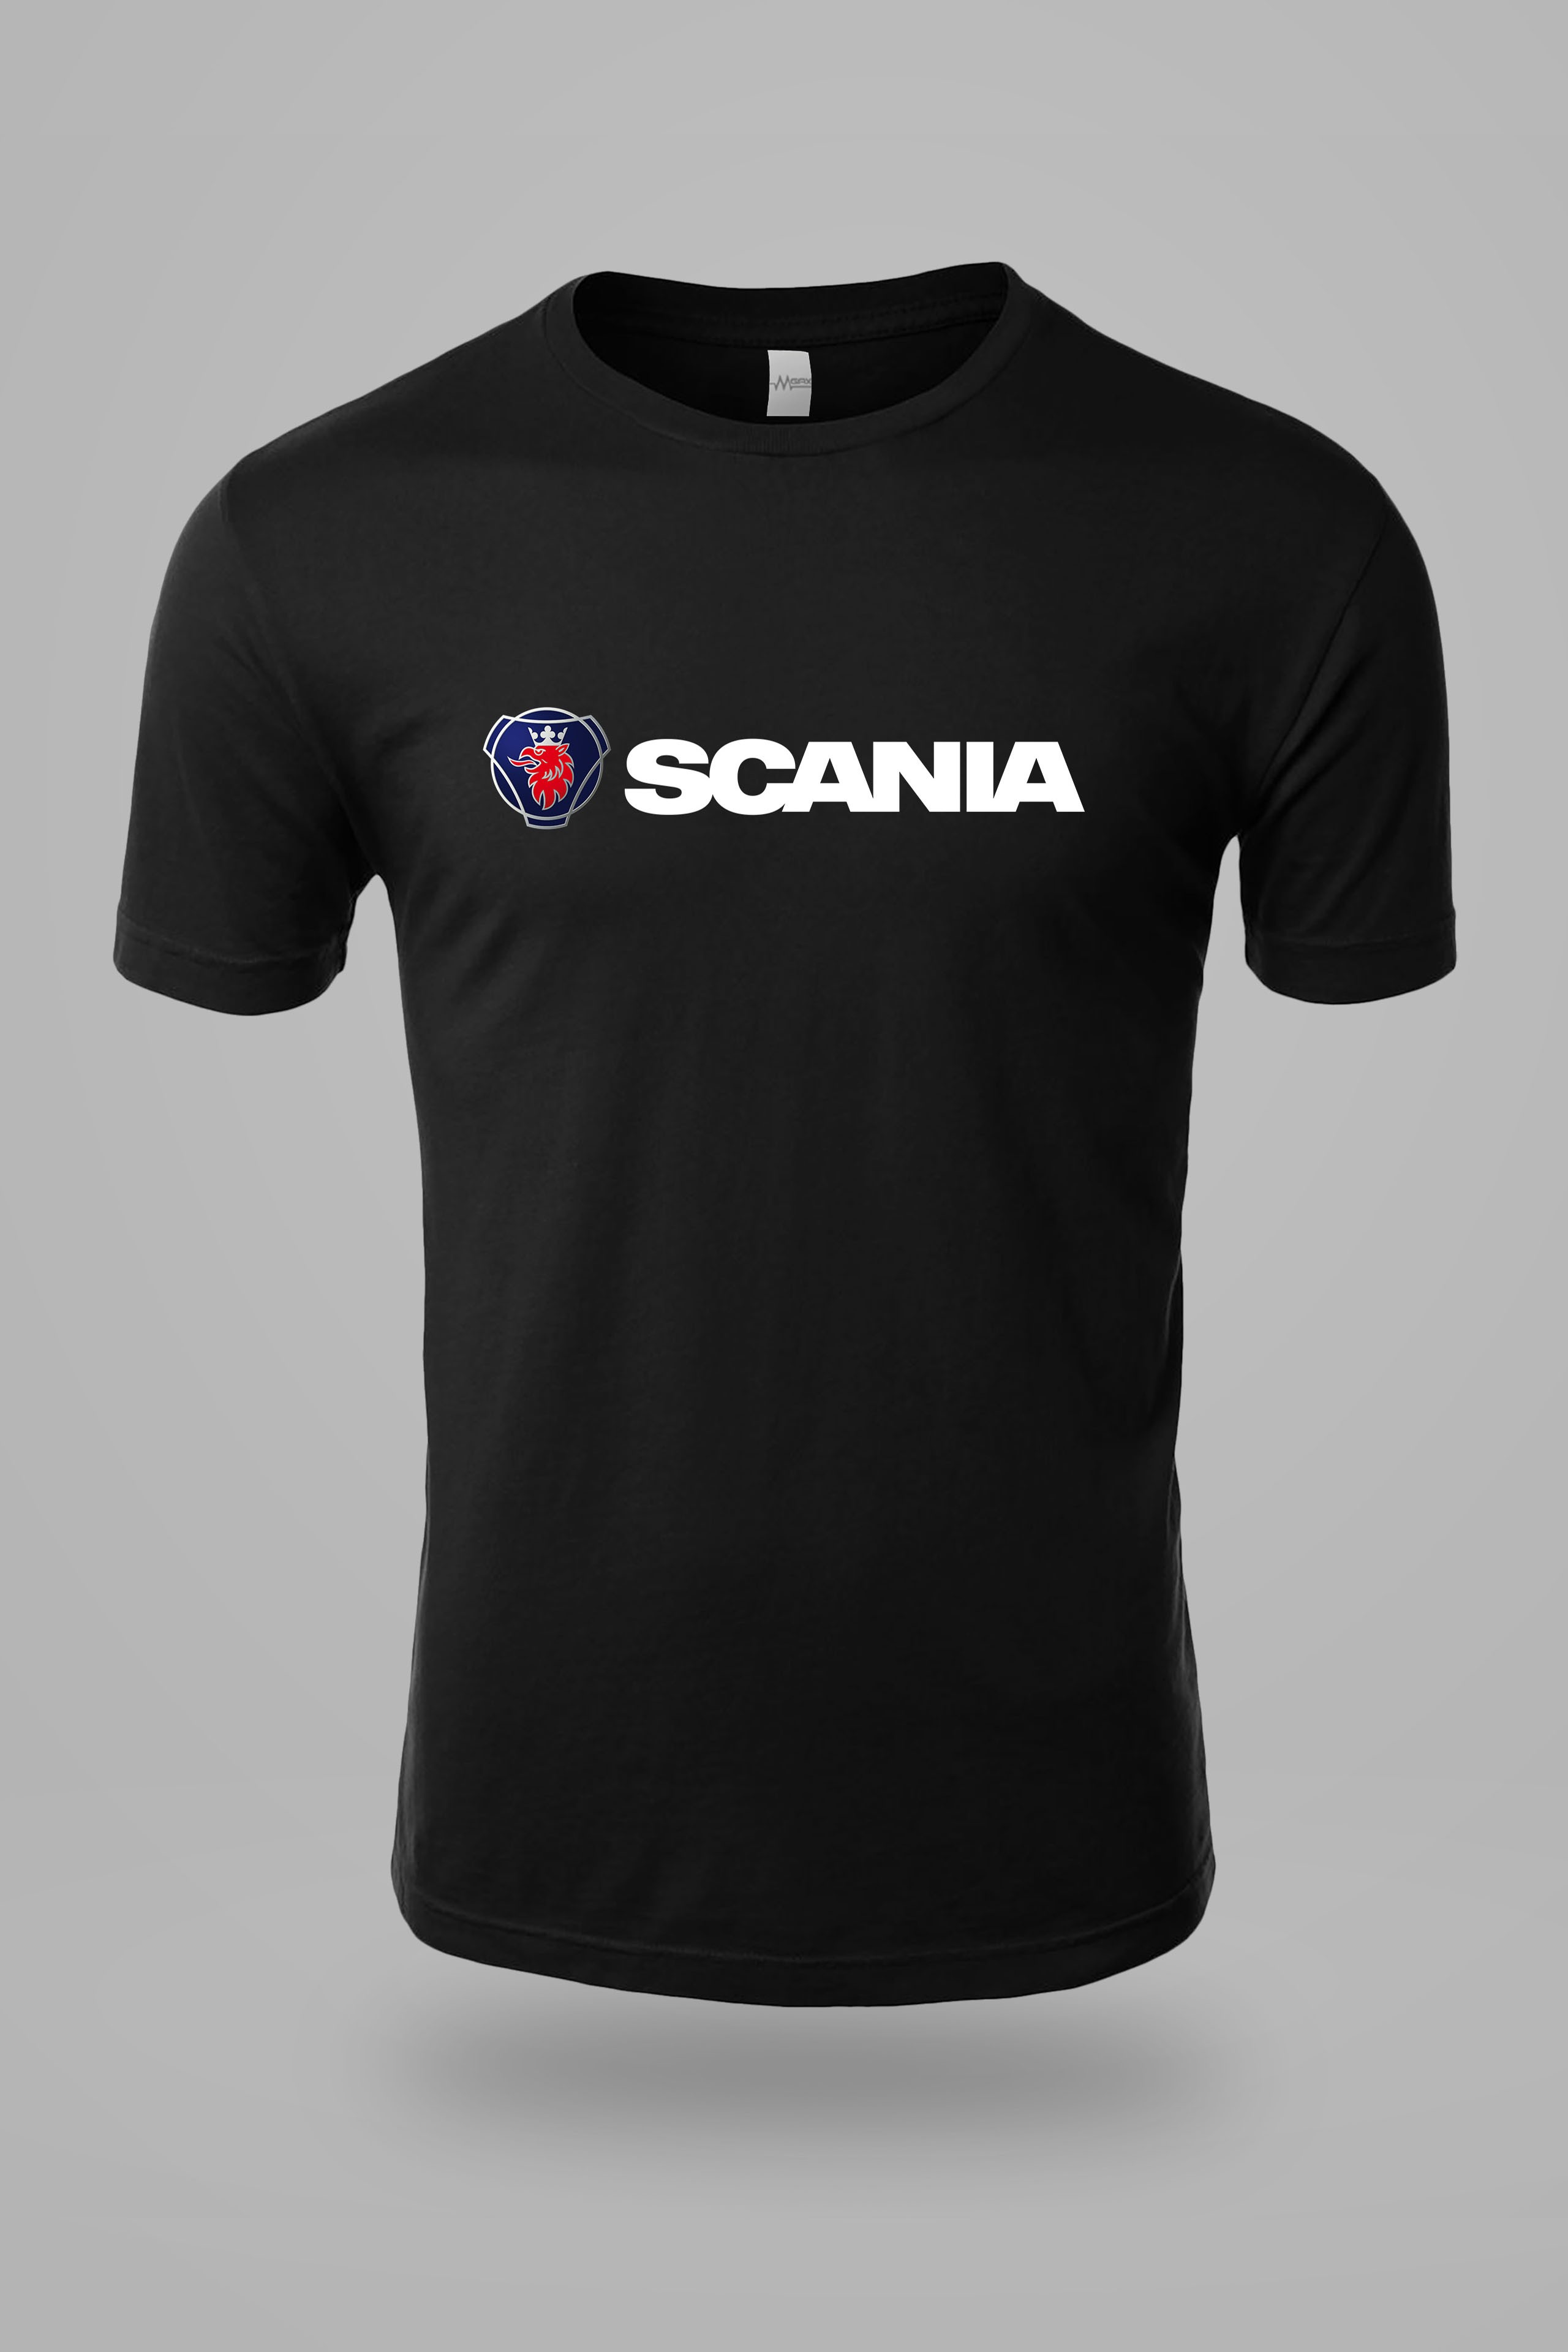 Scania Logo Arma ve Yazılı Göğüs Baskılı Tişört